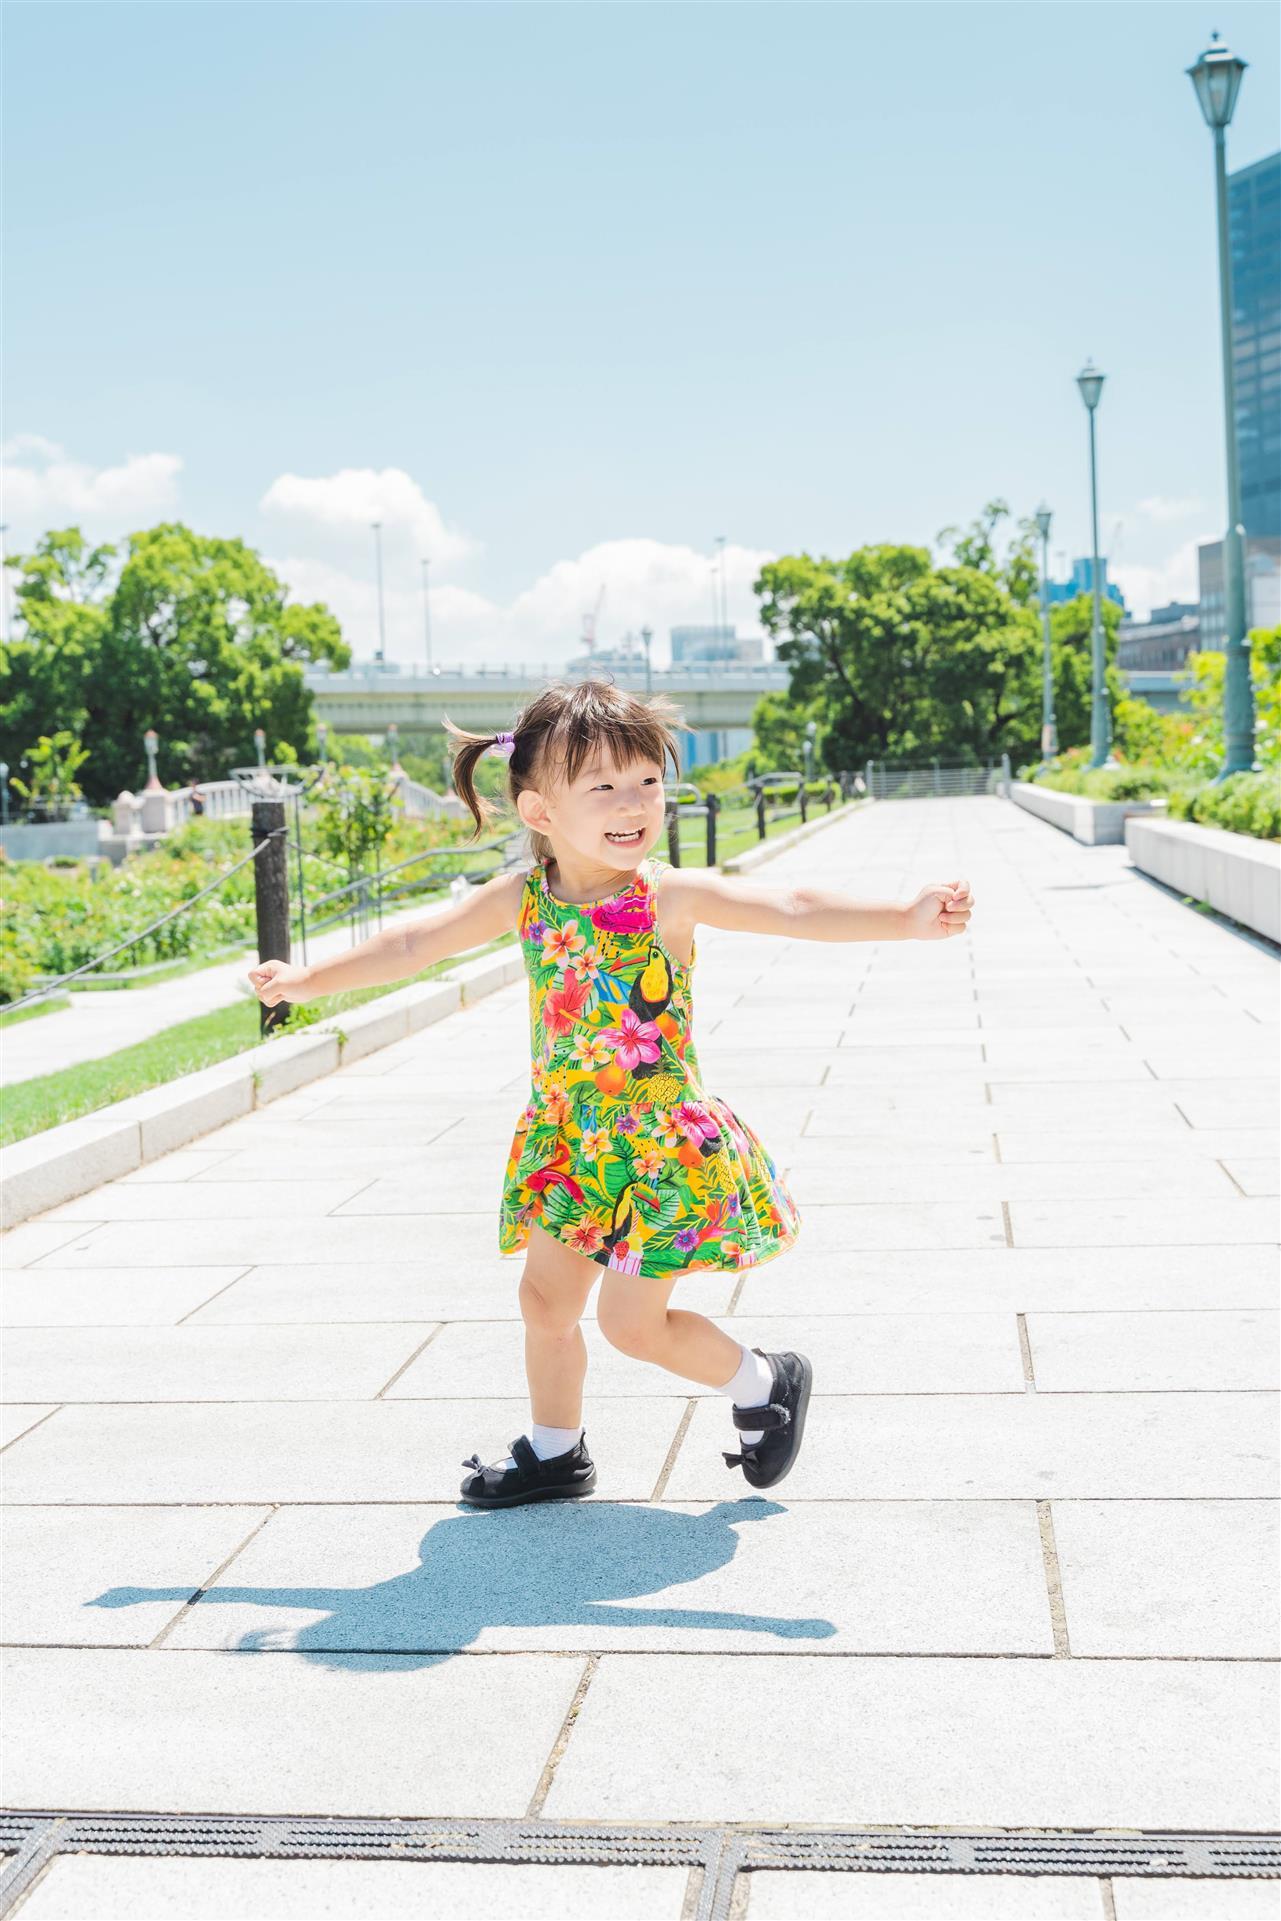 家族写真やウェディング、七五三の出張撮影を依頼したい方は、神戸市中央区を中心に活動中のTsumugraphyまでお問い合わせください。